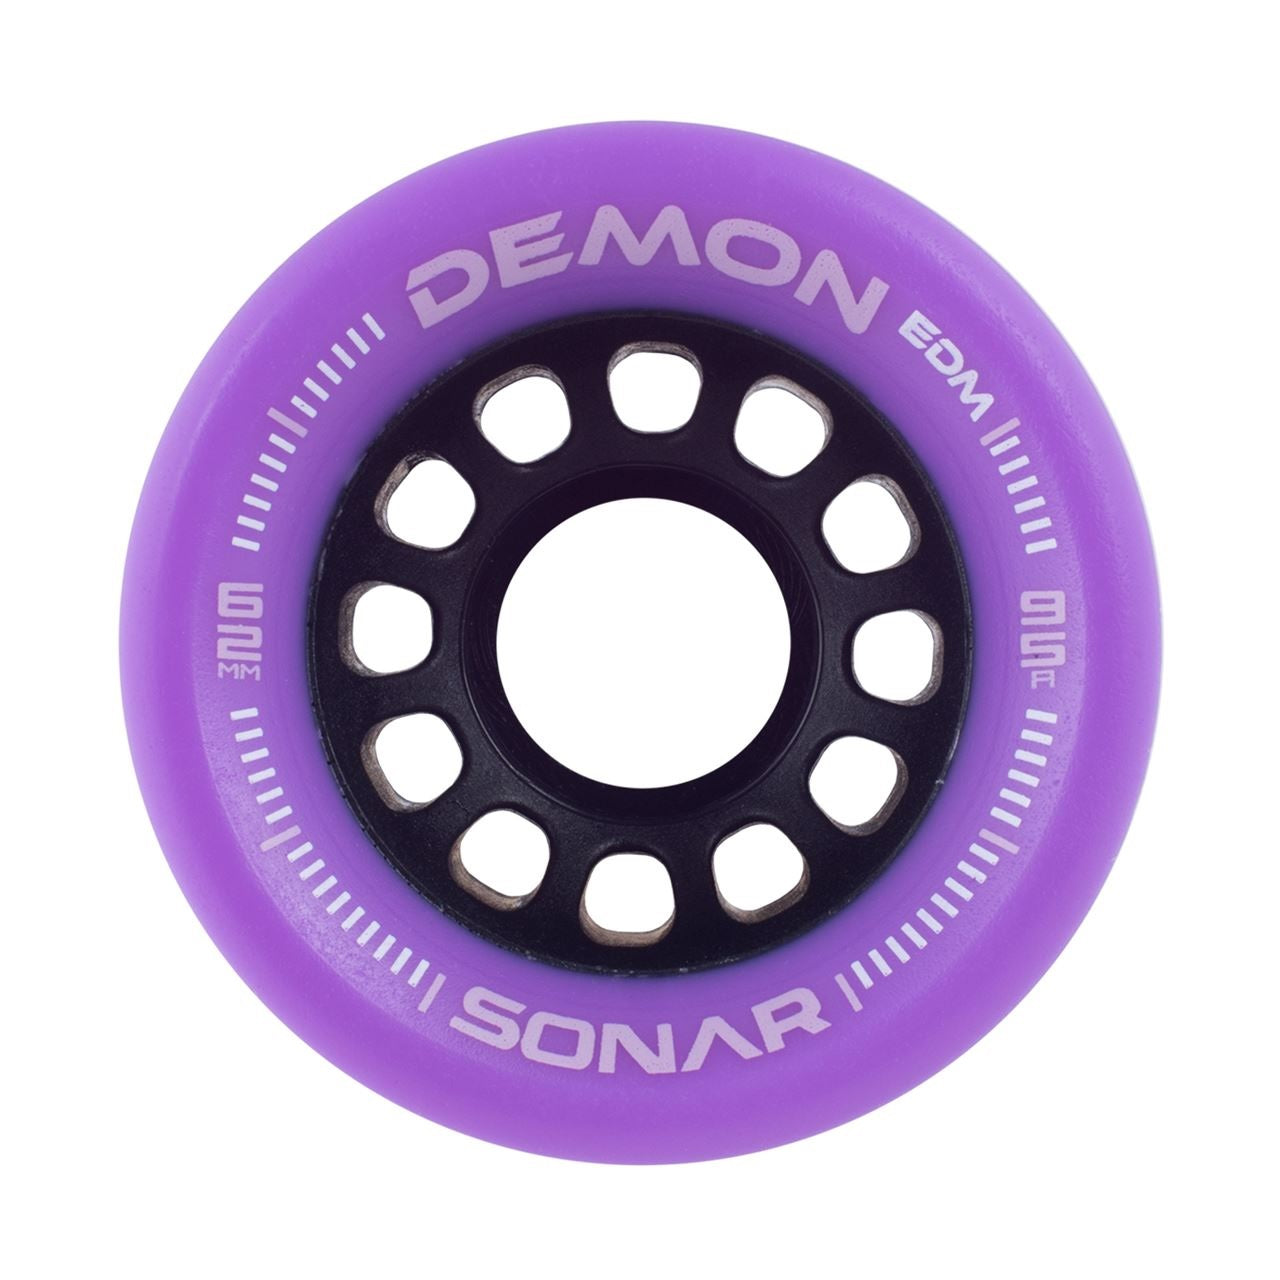 Sonar Demon EDM Ruedas para patines en color morado, 62 mm, 95 a, juego de 4